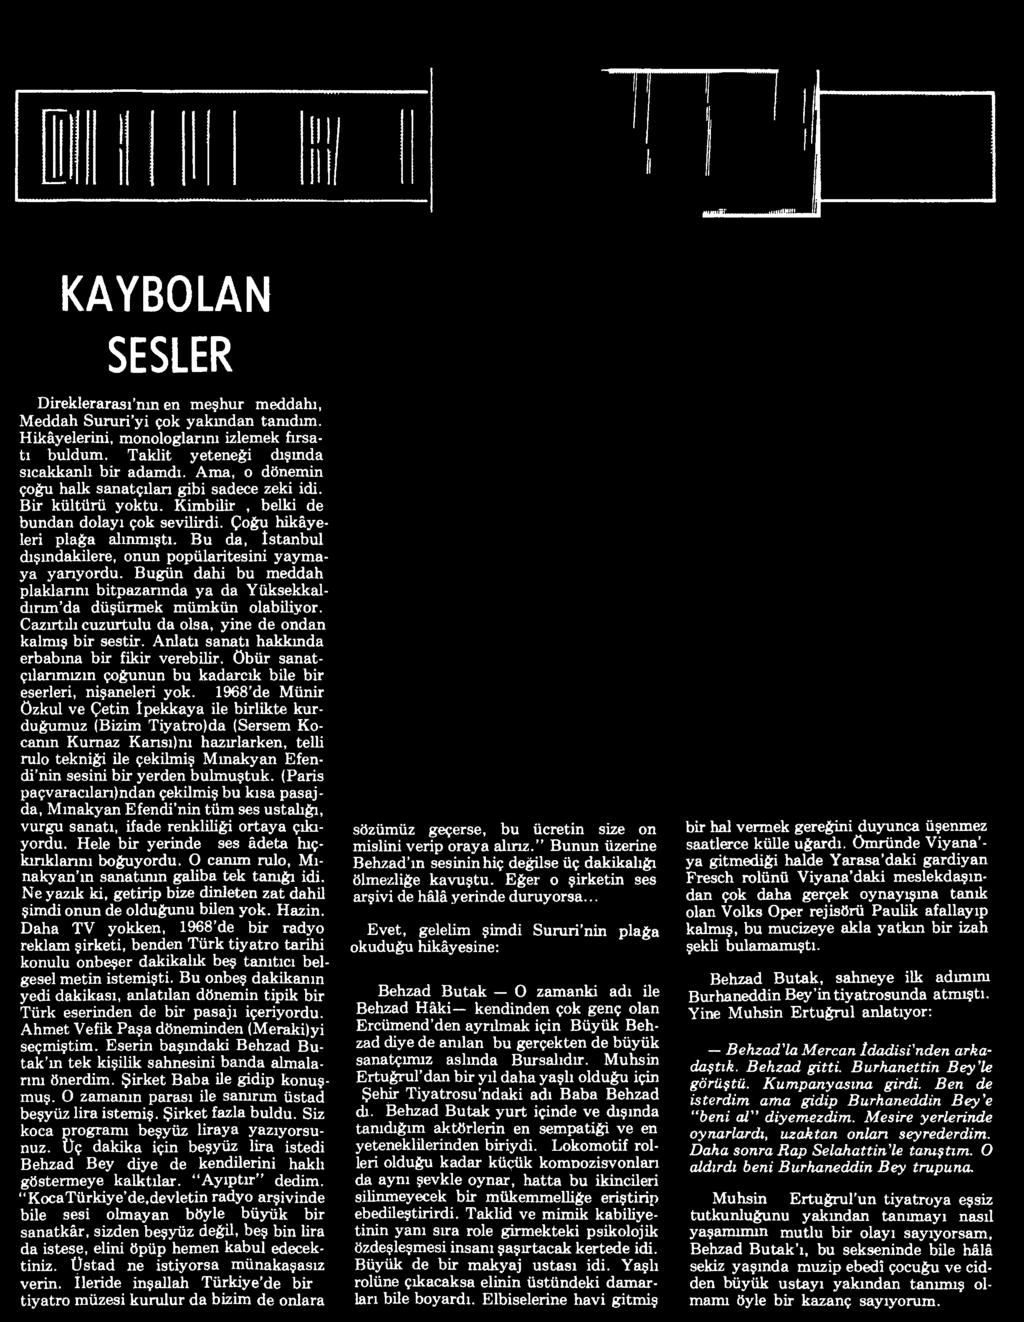 1968 de Münir özkul ve Çetin İpekkaya ile birlikte kurduğumuz (Bizim Tiyatro)da (Sersem Kocanın Kurnaz Kansı)nı hazırlarken, telli rulo tekniği ile çekilmiş Mmakyan Efendi nin sesini bir yerden